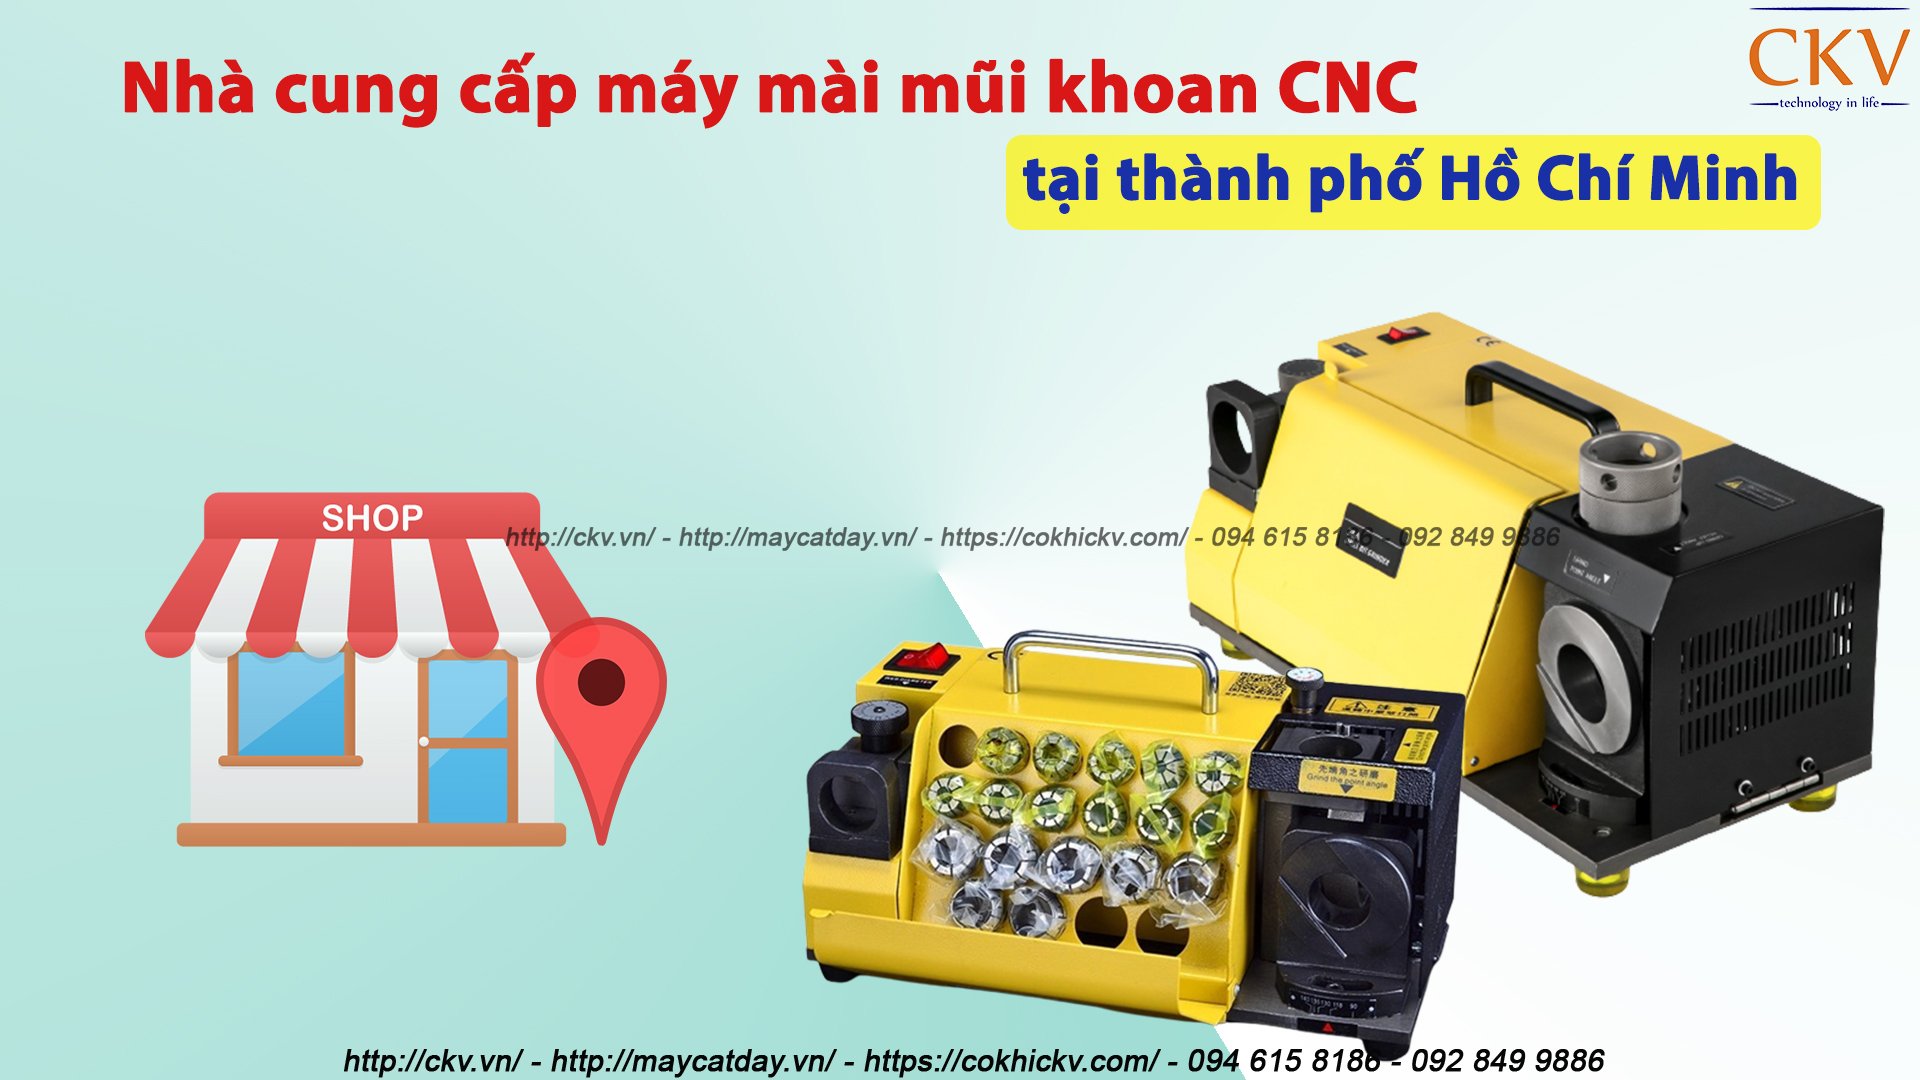 Nhà cung cấp máy mài mũi khoan CNC giá rẻ tại Sài Gòn